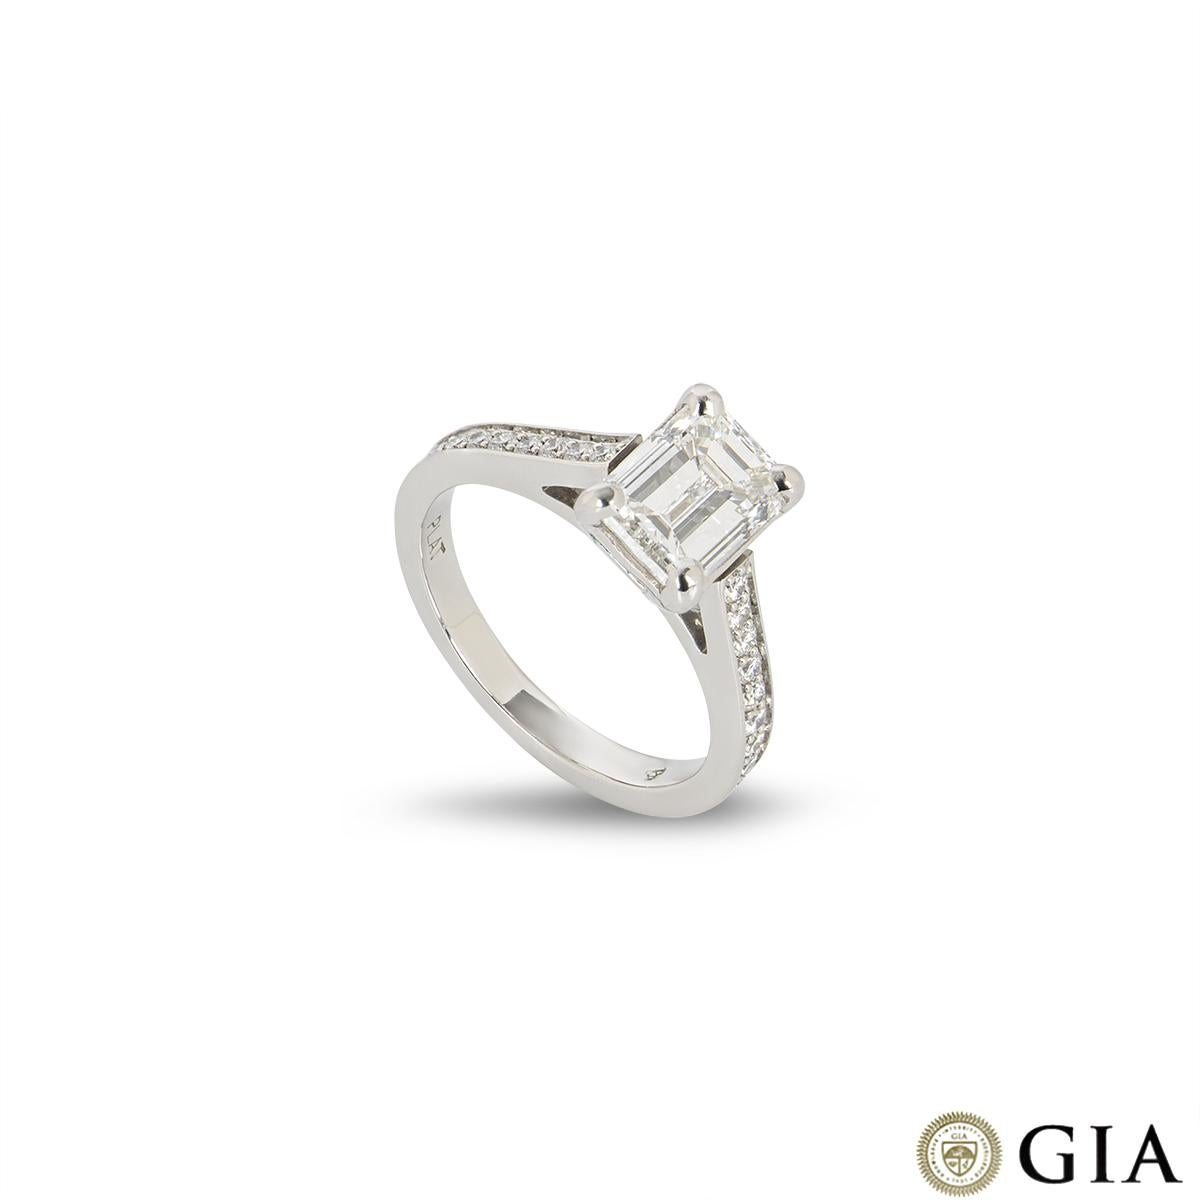 Une magnifique bague de fiançailles en diamant et platine. La bague comprend un diamant de taille émeraude d'un poids de 1,51ct, de couleur F et de pureté VVS2 dans une monture à 4 griffes. Le diamant central est complété par 9 diamants ronds de